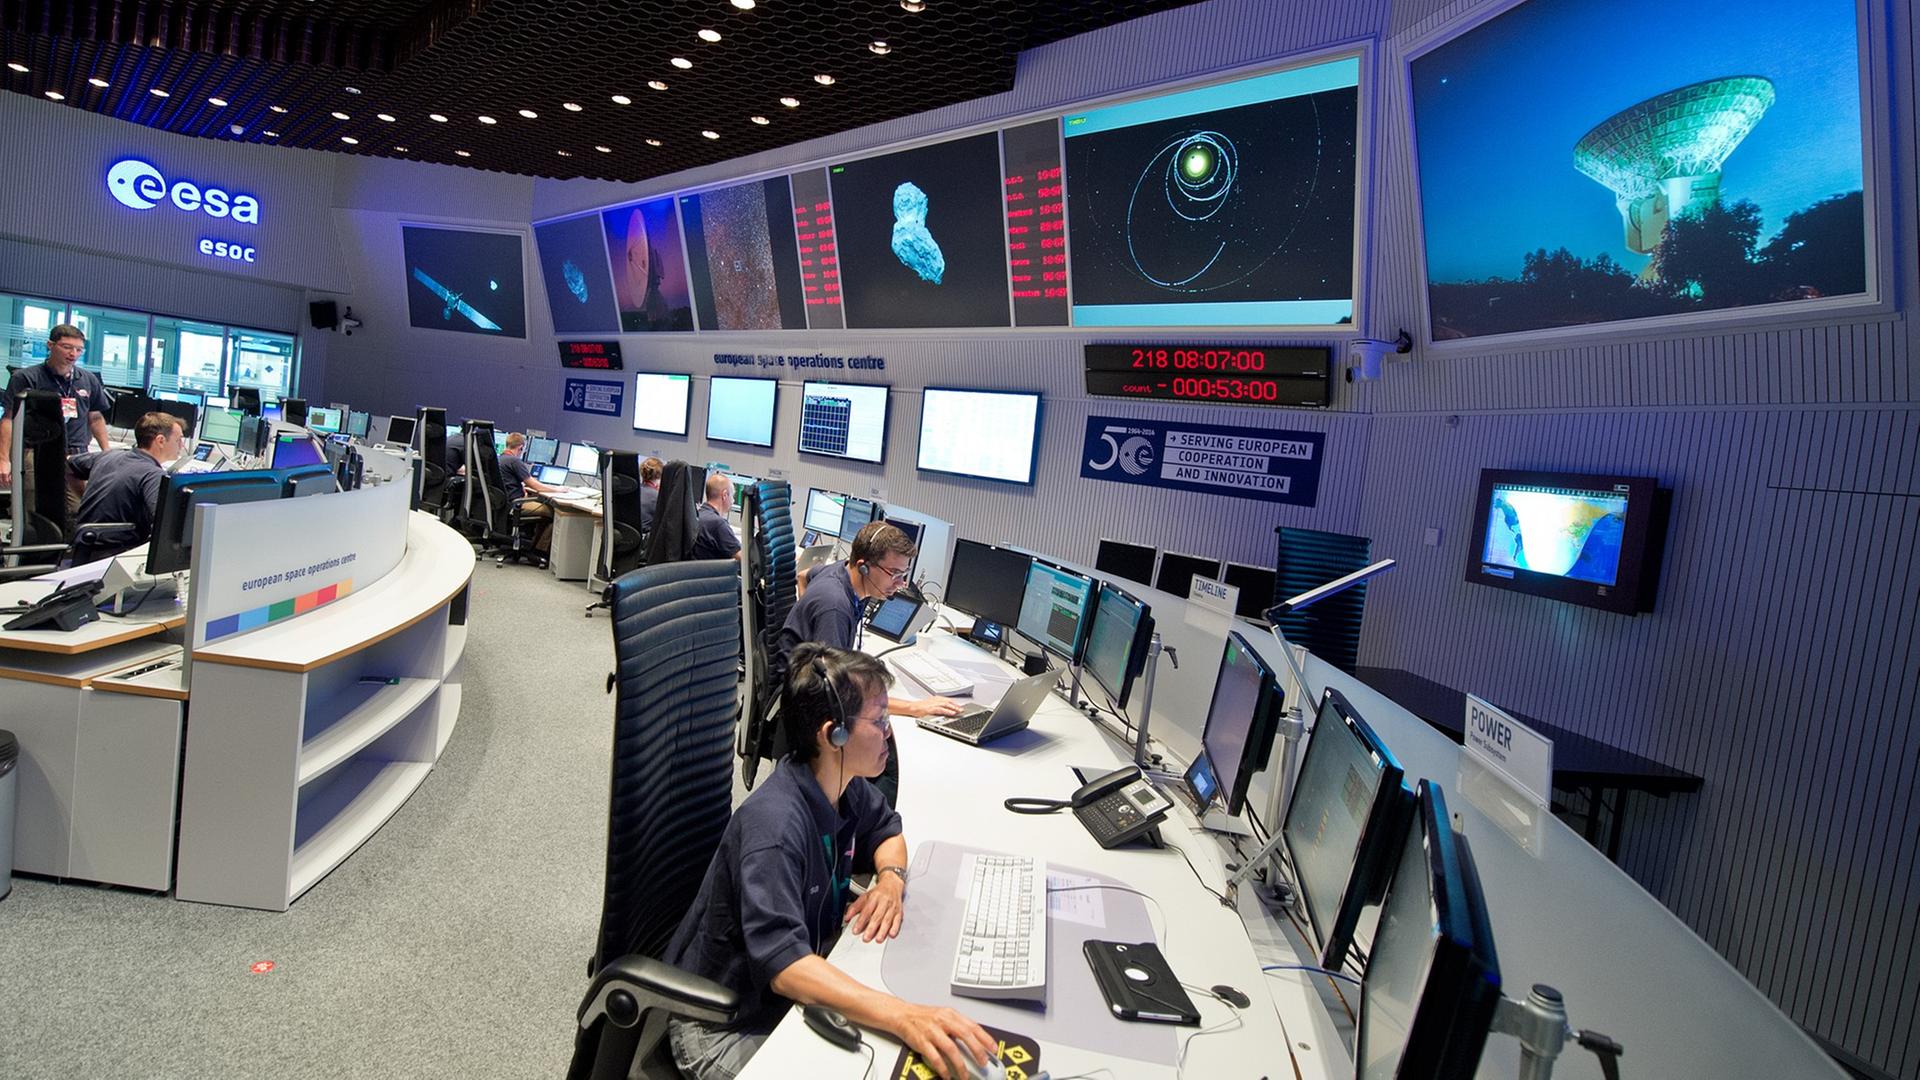 Im Kontrollzentrum der ESA in Darmstadt (Hessen) verfolgen Experten am 06.08.2014 den Flug der Raumsonde "Rosetta". Nach zehnjährigem Flug durchs All erreicht die Raumsonde im Laufe des Tages den Kometen «67P/Tschurjumow-Gerassimenko». Mit dem Einschwenken der Sonde in die Umlaufbahn beginnt das spannende Finale einer rund sechs Milliarden Kilometer langen Reise, die im November mit der ersten Landung auf einem Kometen gekrönt werden soll.